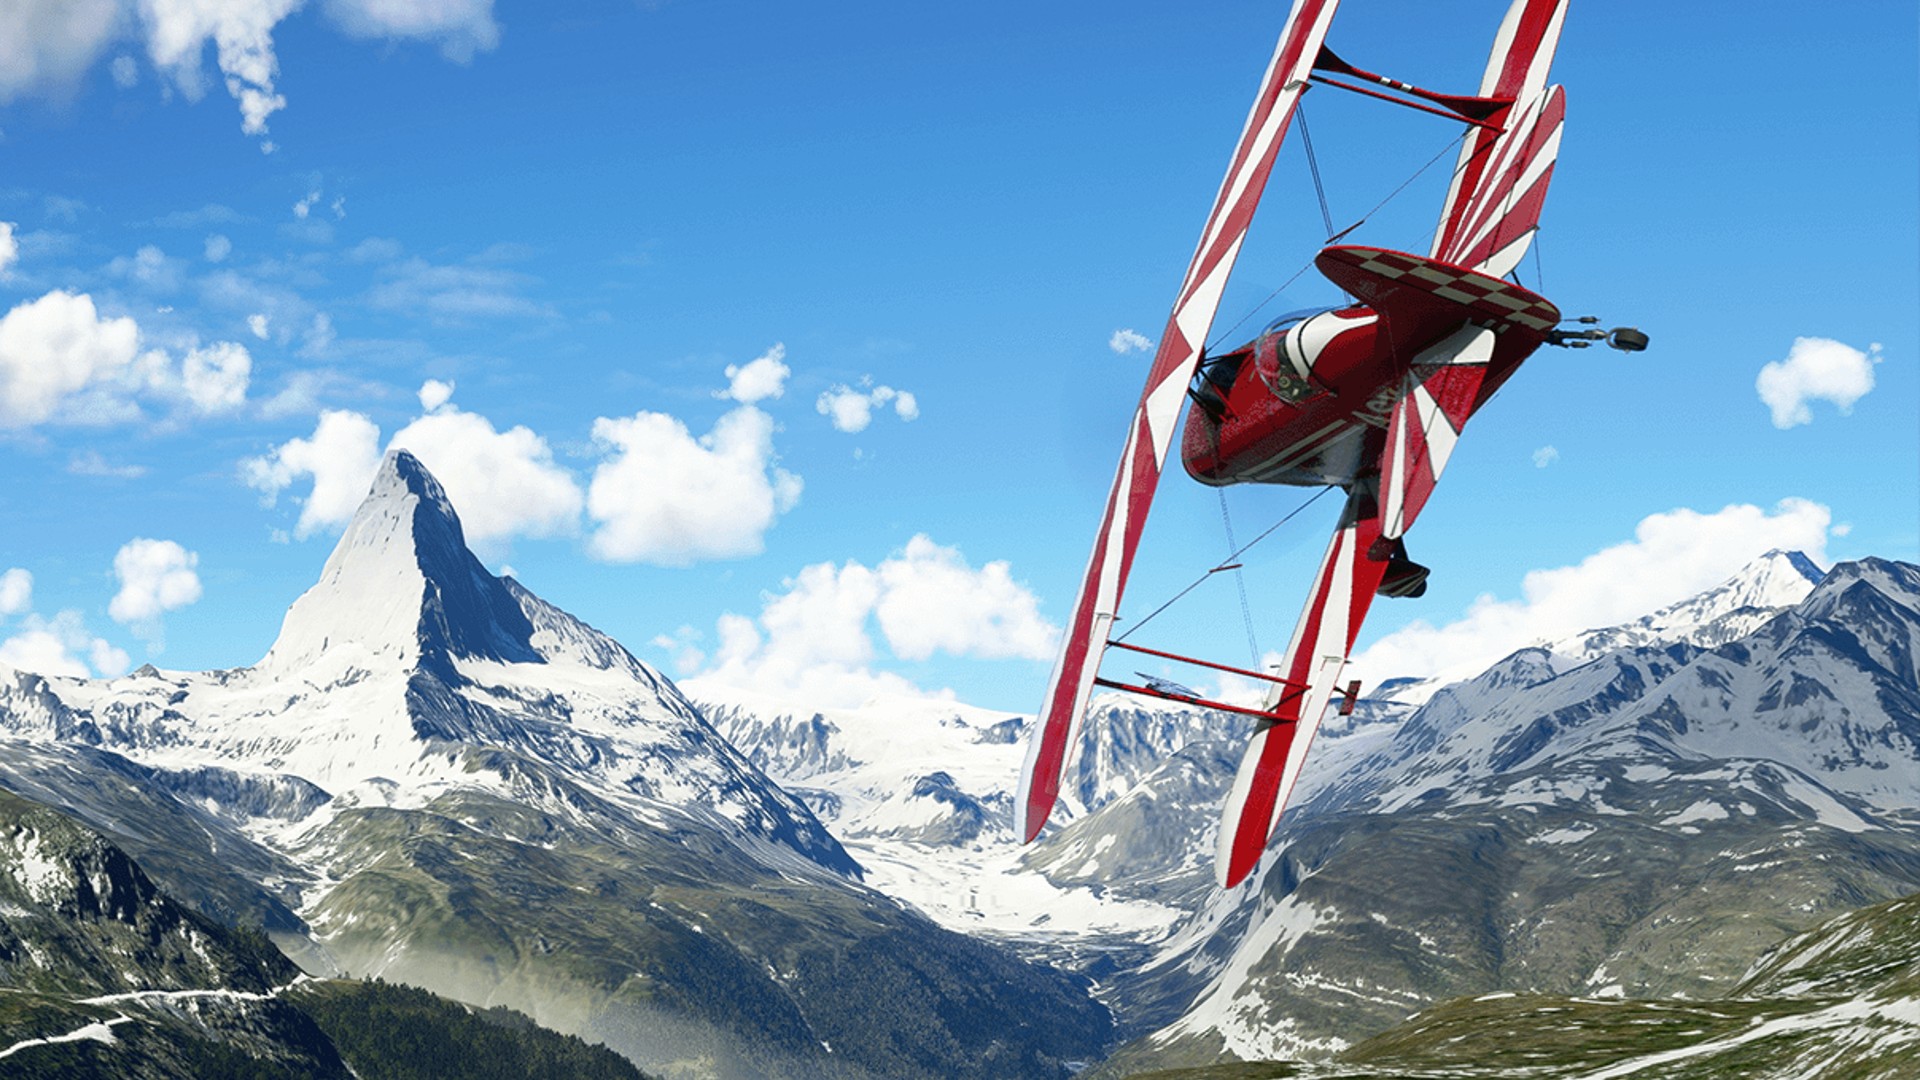  Microsoft Flight Sim's new update makes Matterhorn even more daunting 